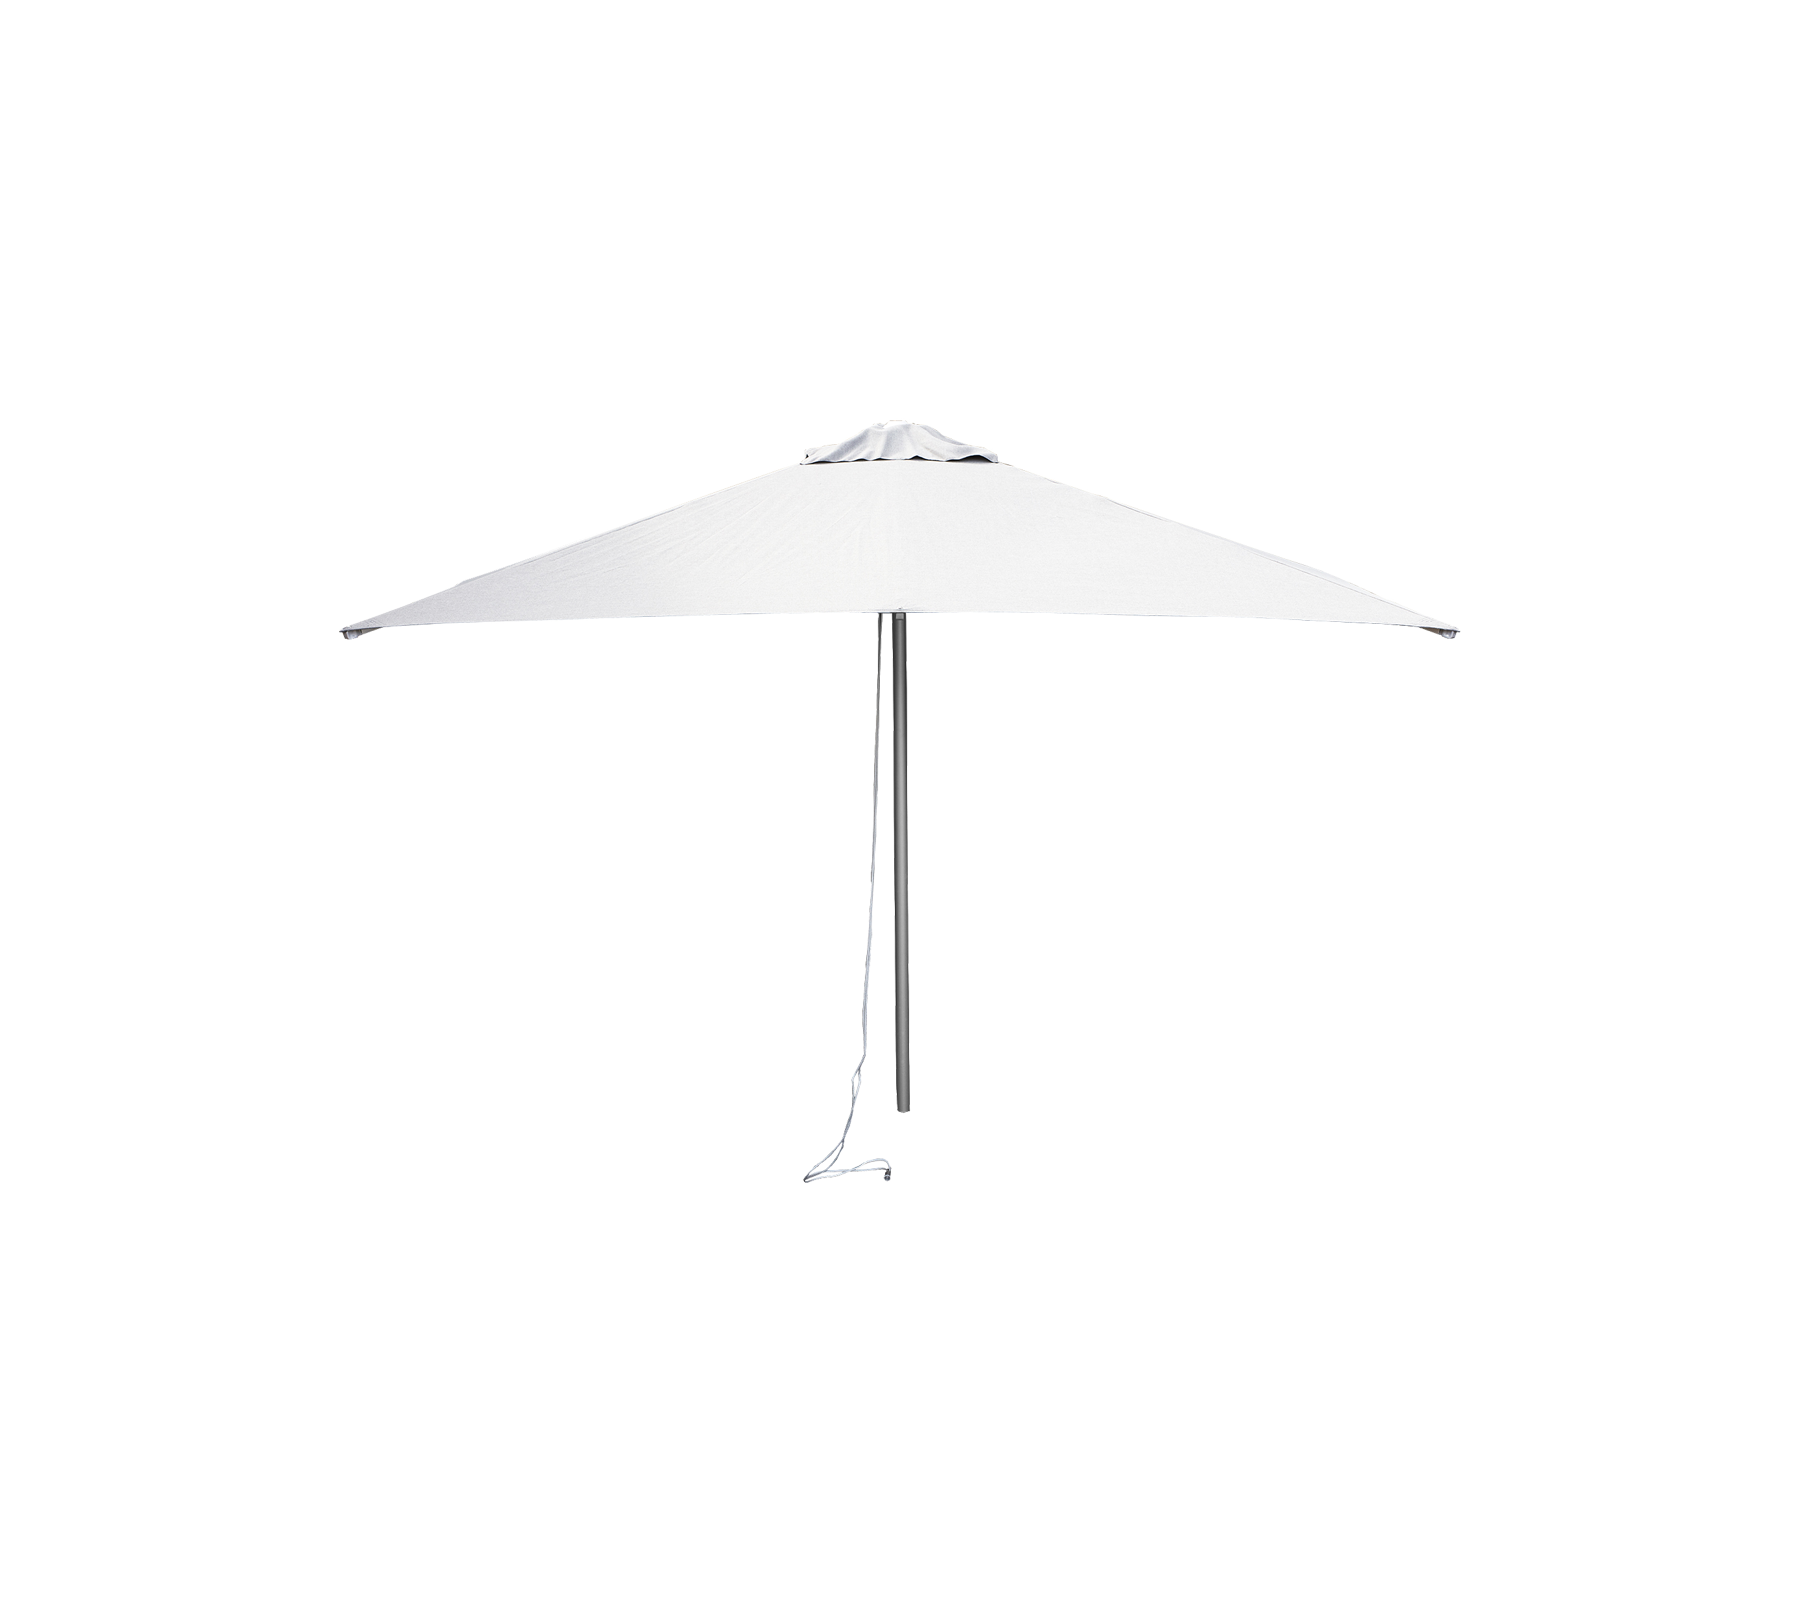 Harbour parasol w/pulley 2x2 m